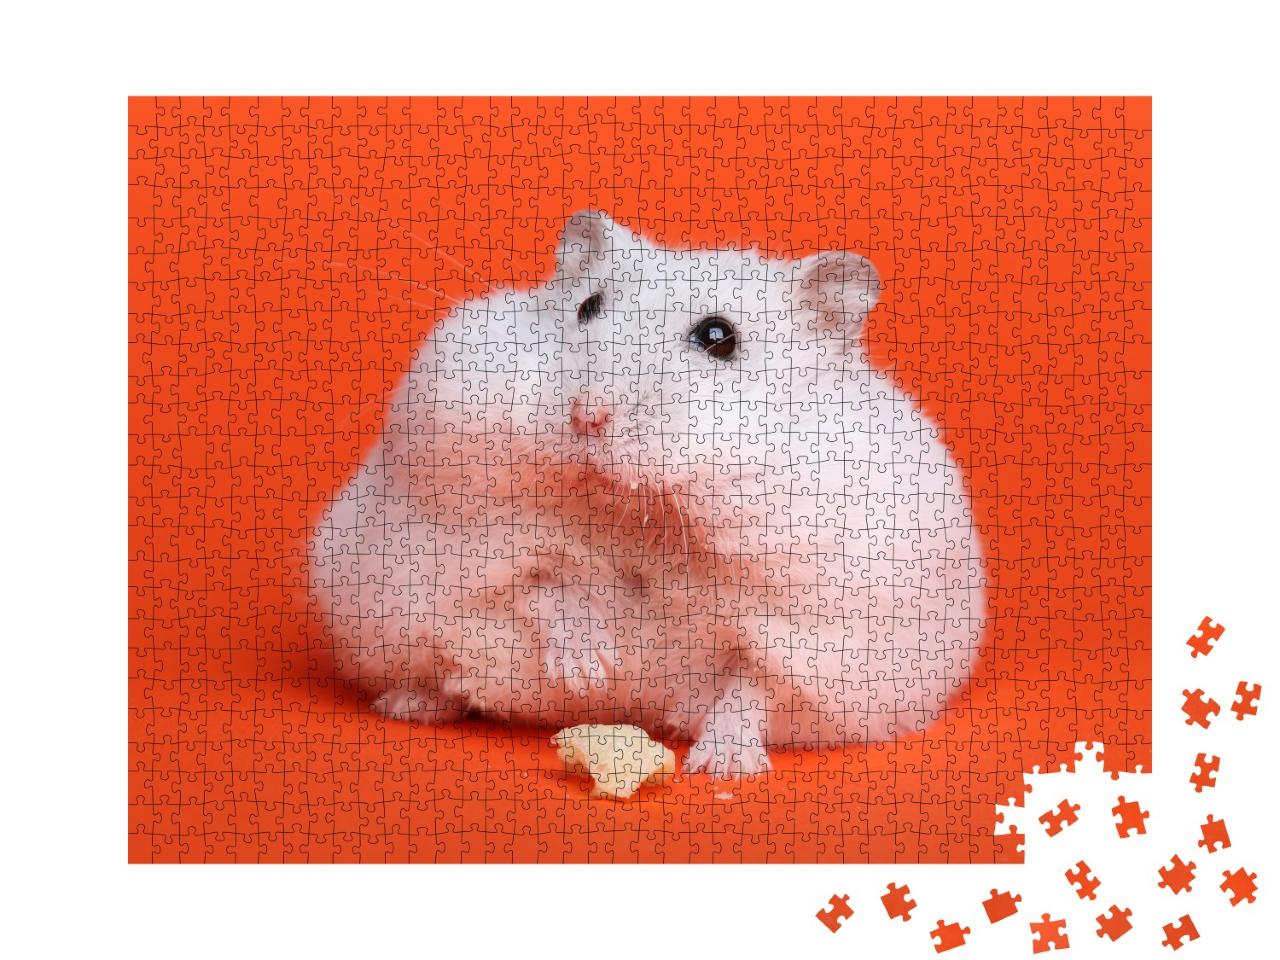 Puzzle de 1000 pièces « Hamster blanc duveteux »